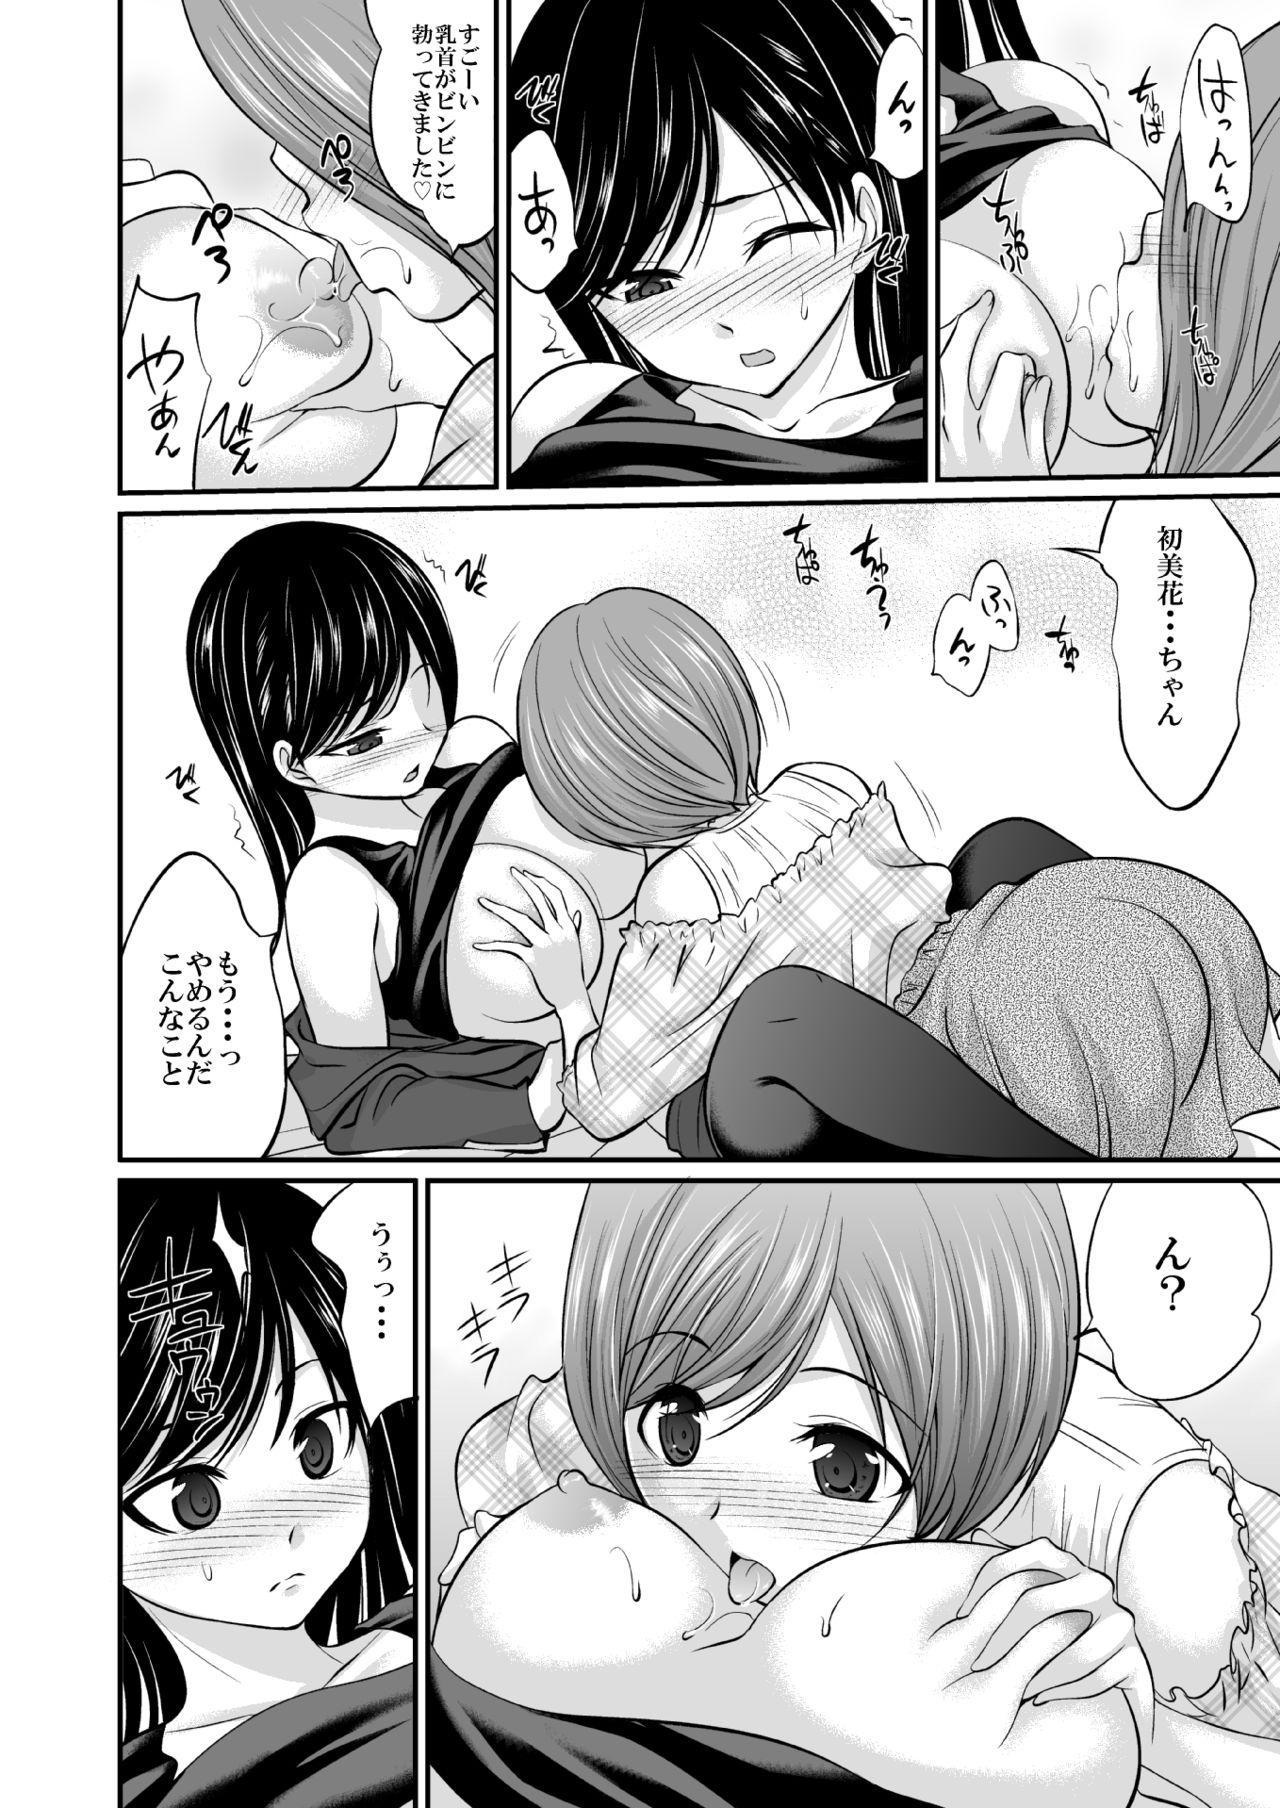 Pregnant Saitei de Saikou na Jikan - Kaitou sentai lupinranger vs keisatsu sentai patranger Webcams - Page 7